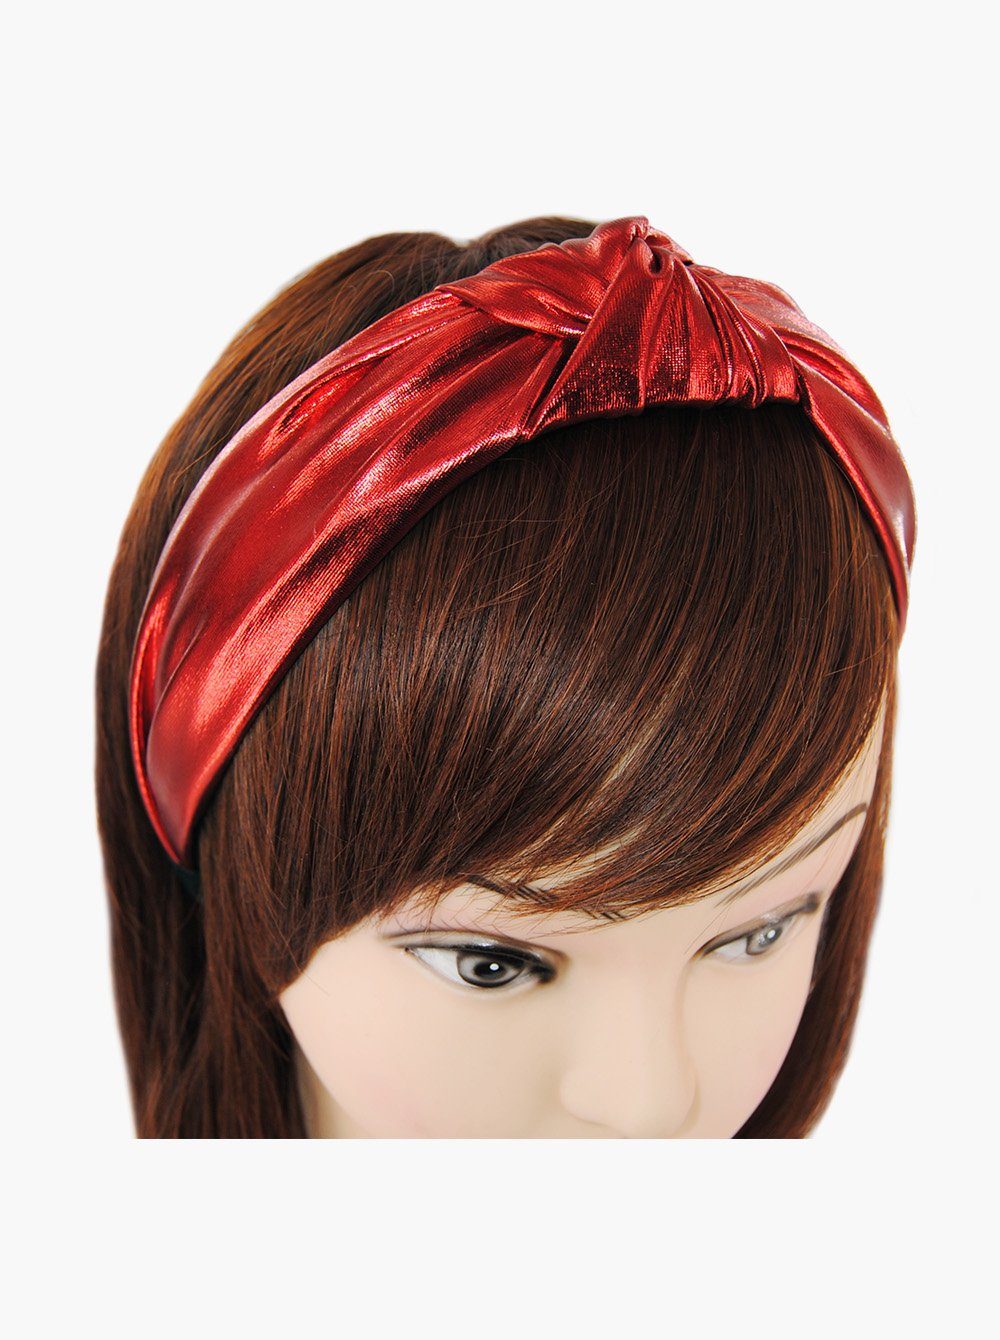 Vintage Breiter Haarreif Metallic-Optik, axy mit Rot Haarband Knoten Haarreif Damen Haareifen